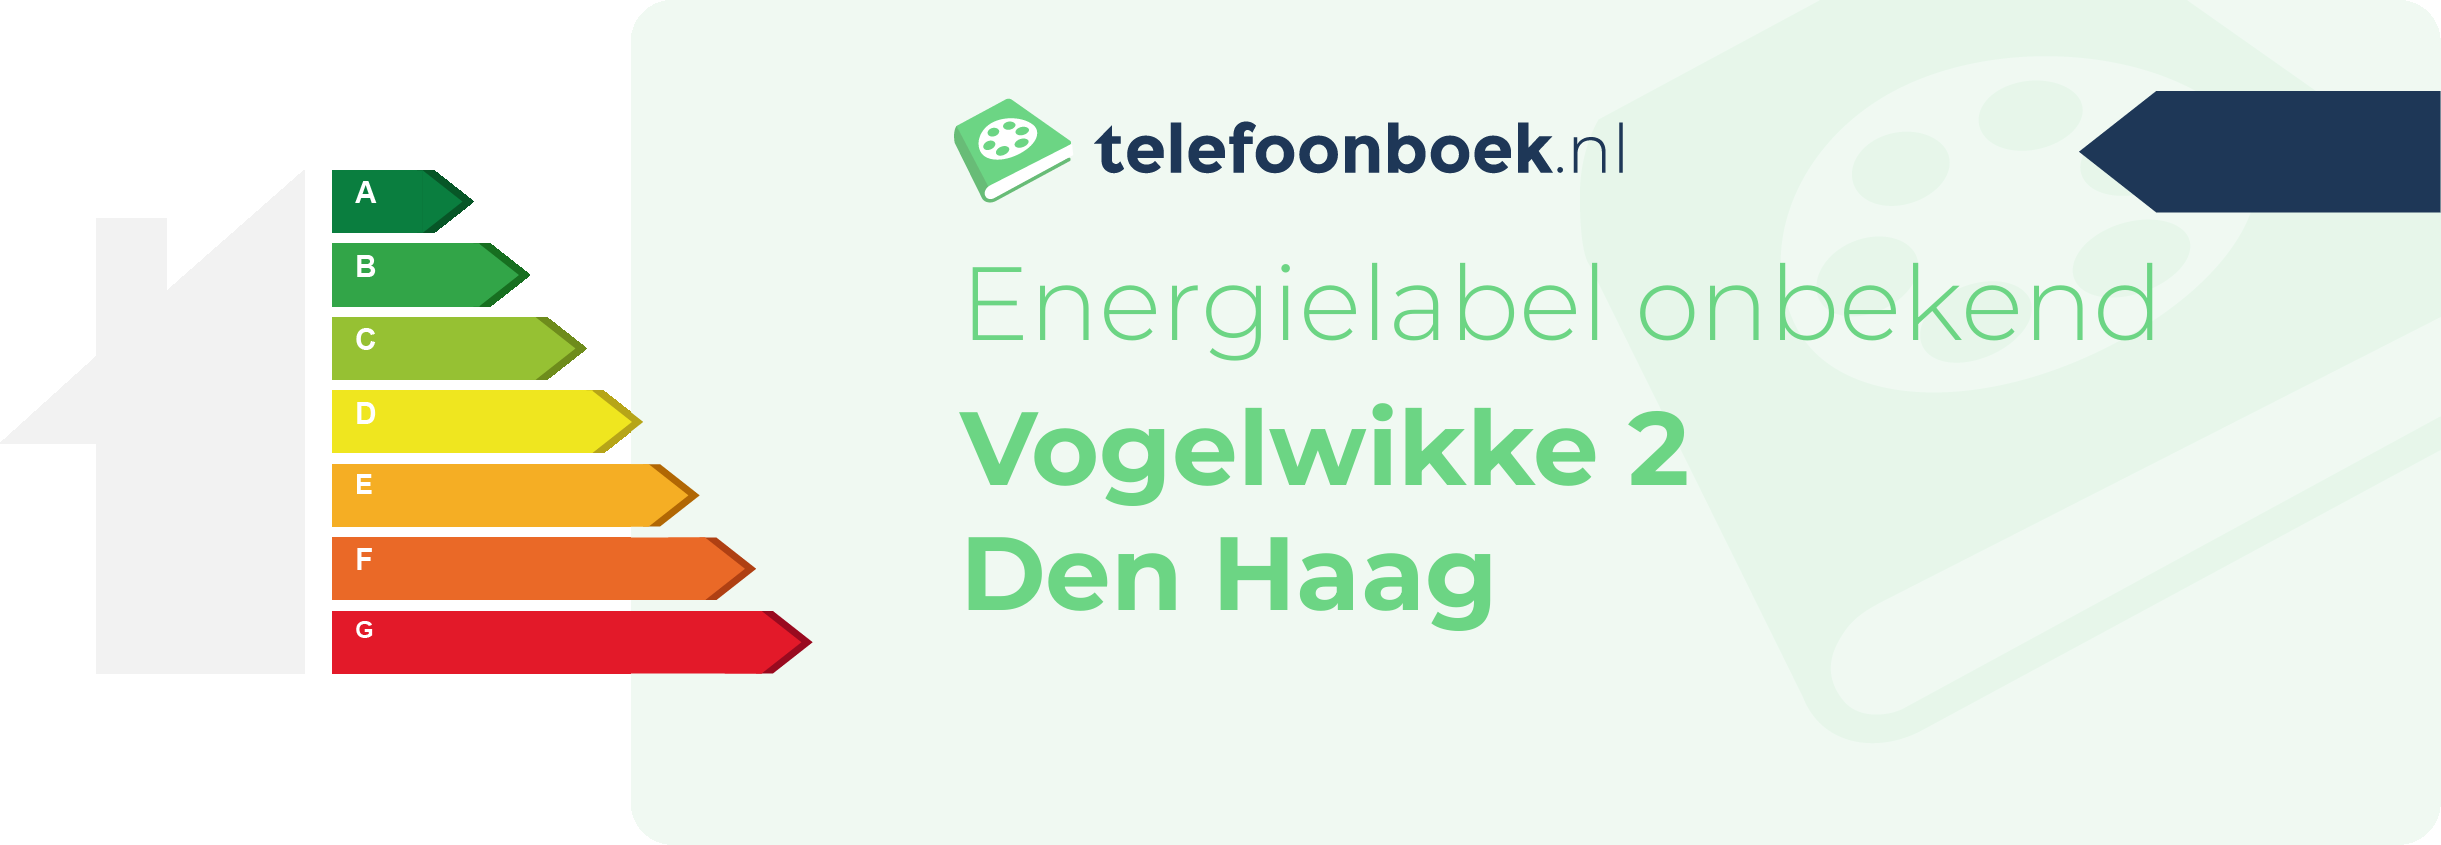 Energielabel Vogelwikke 2 Den Haag